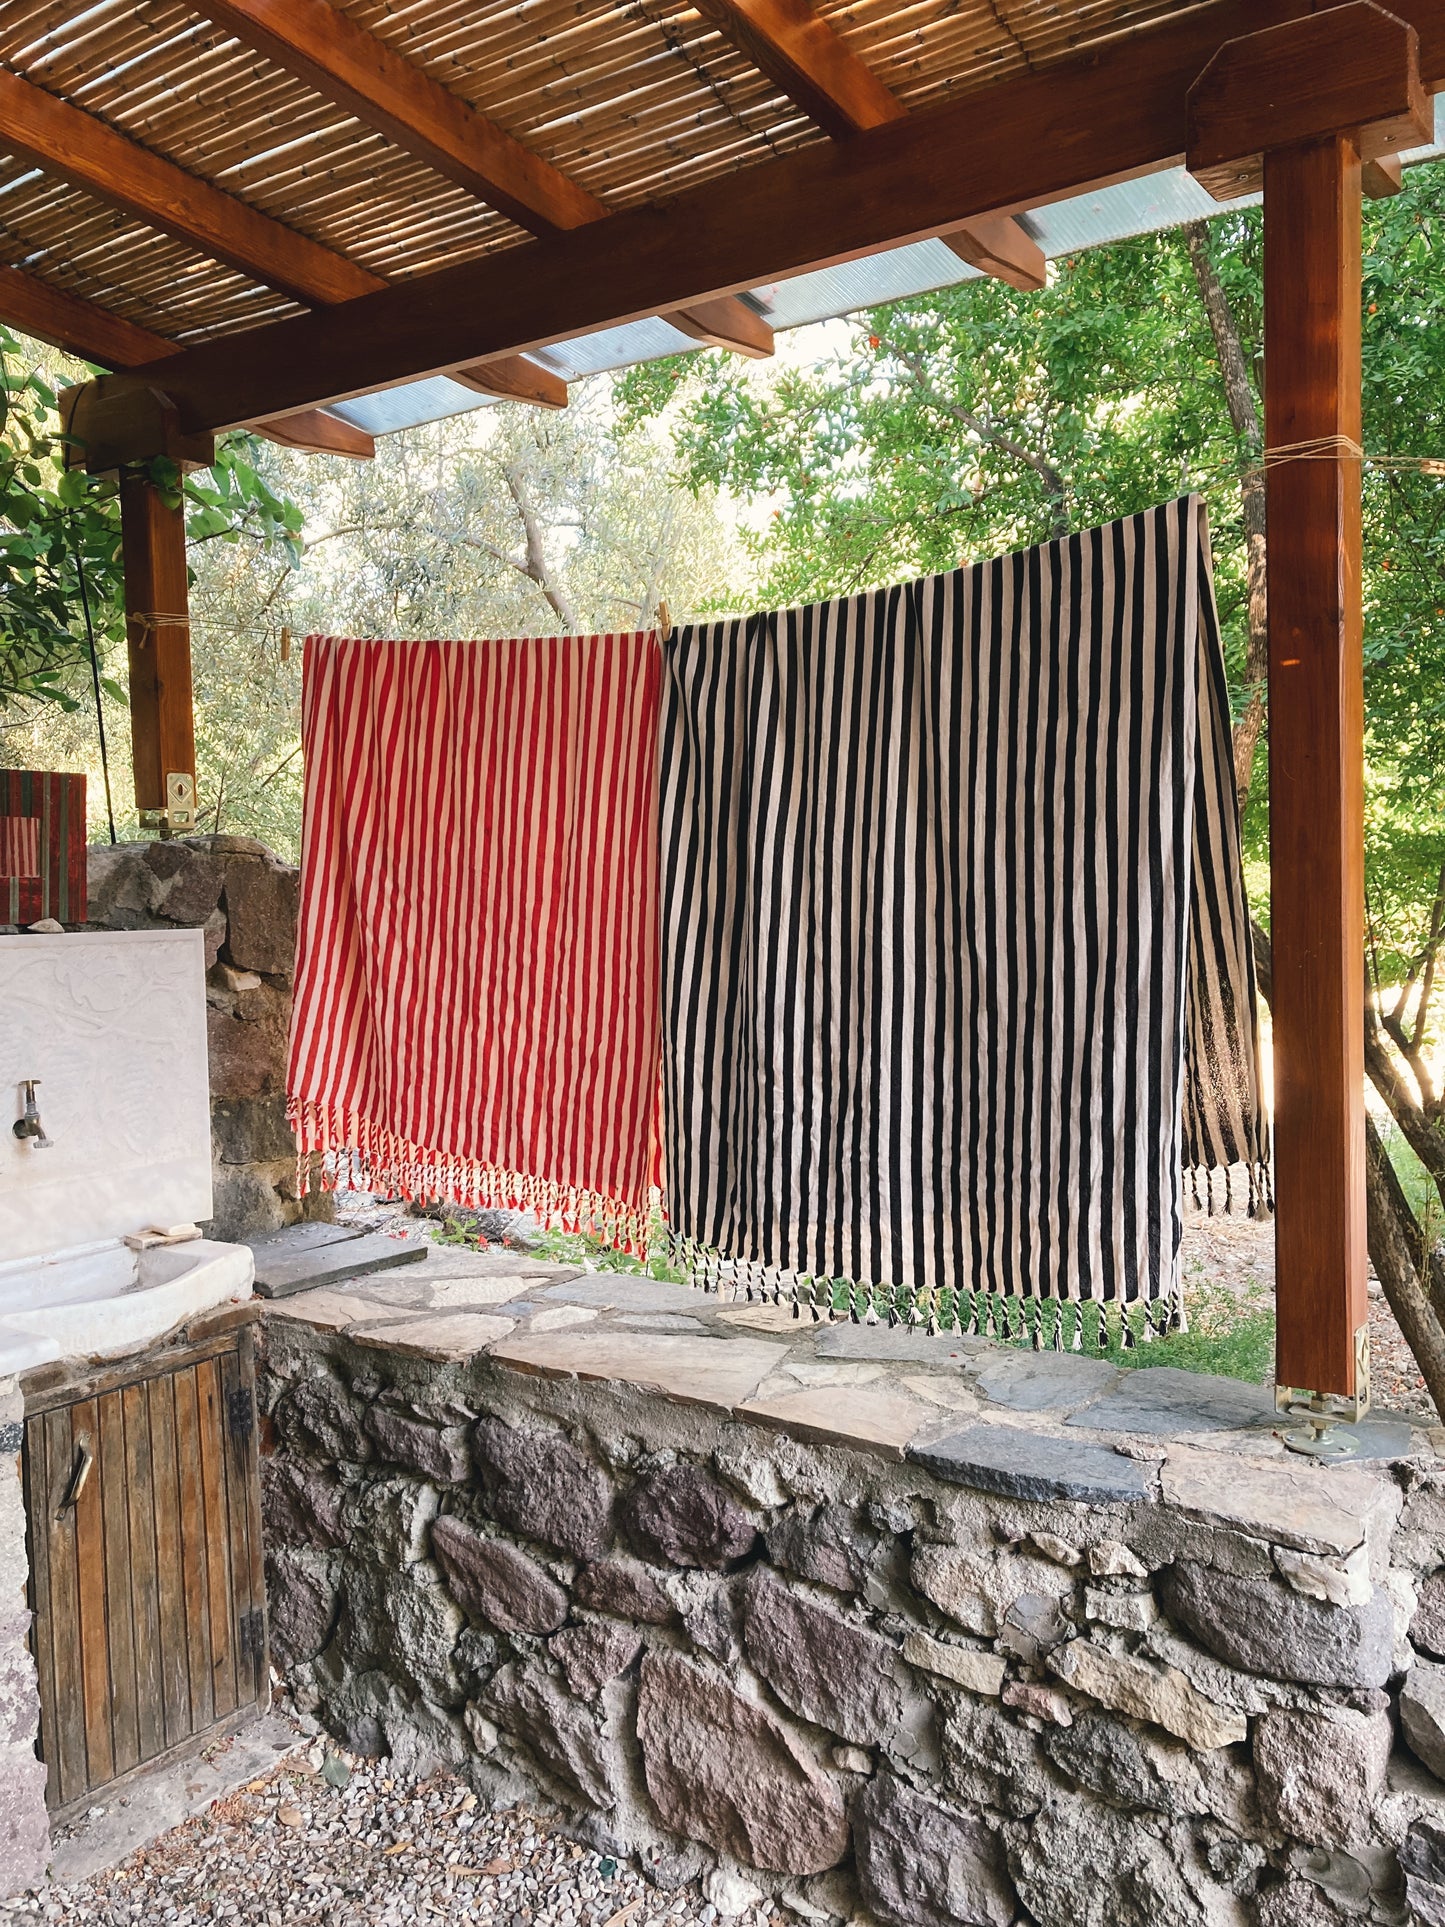 Zebra-Handtuch